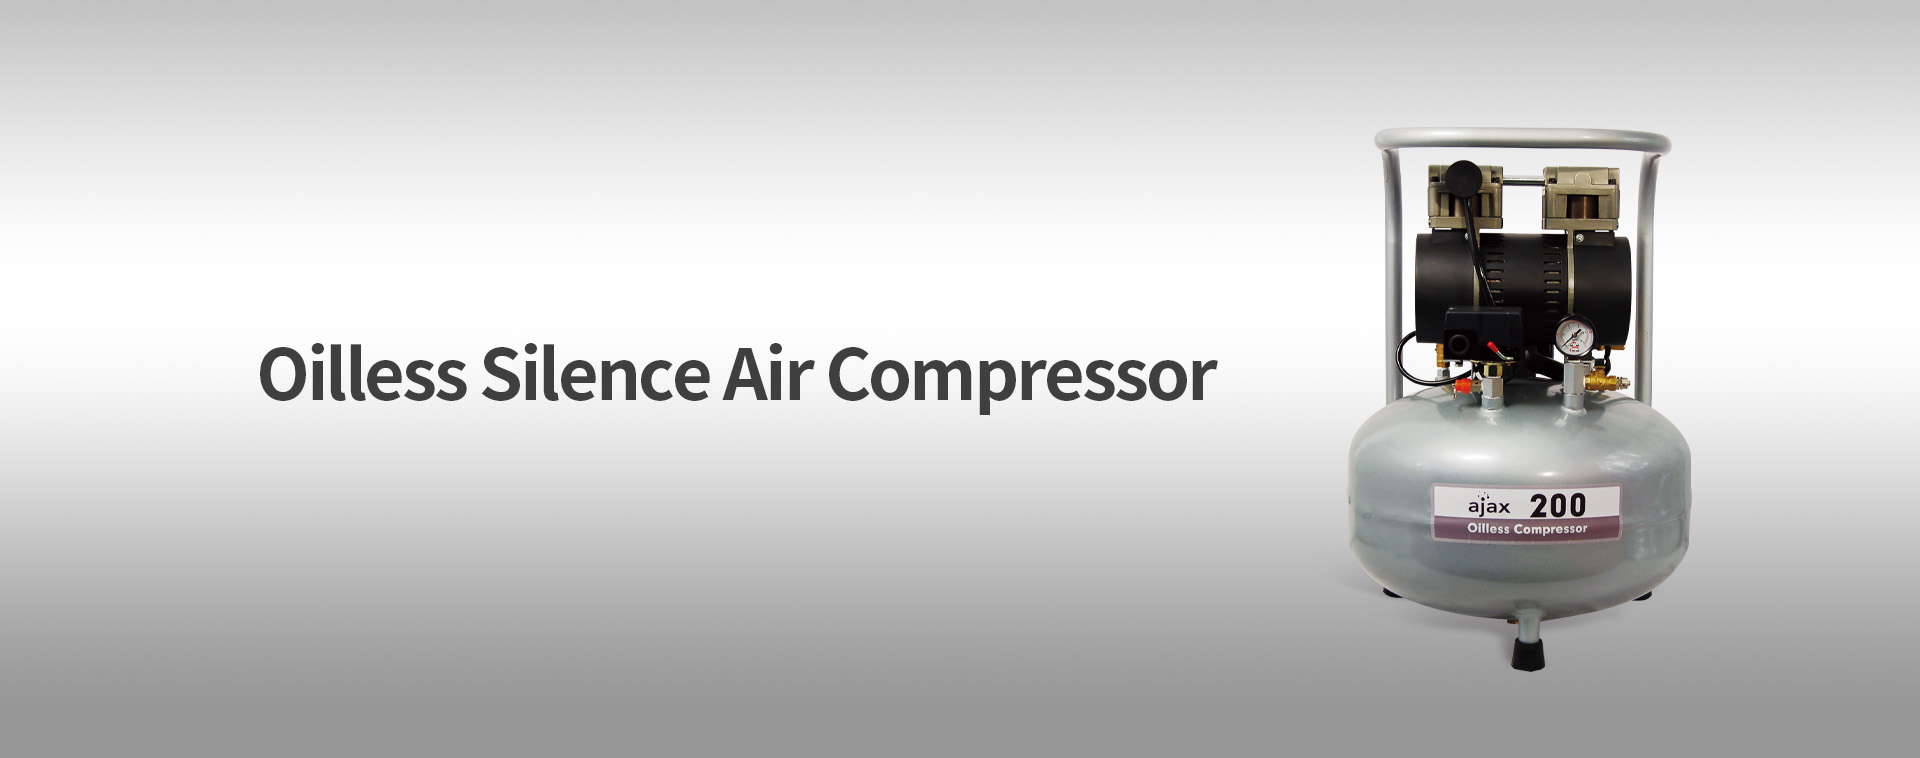 Compresor de aire Ajax 200